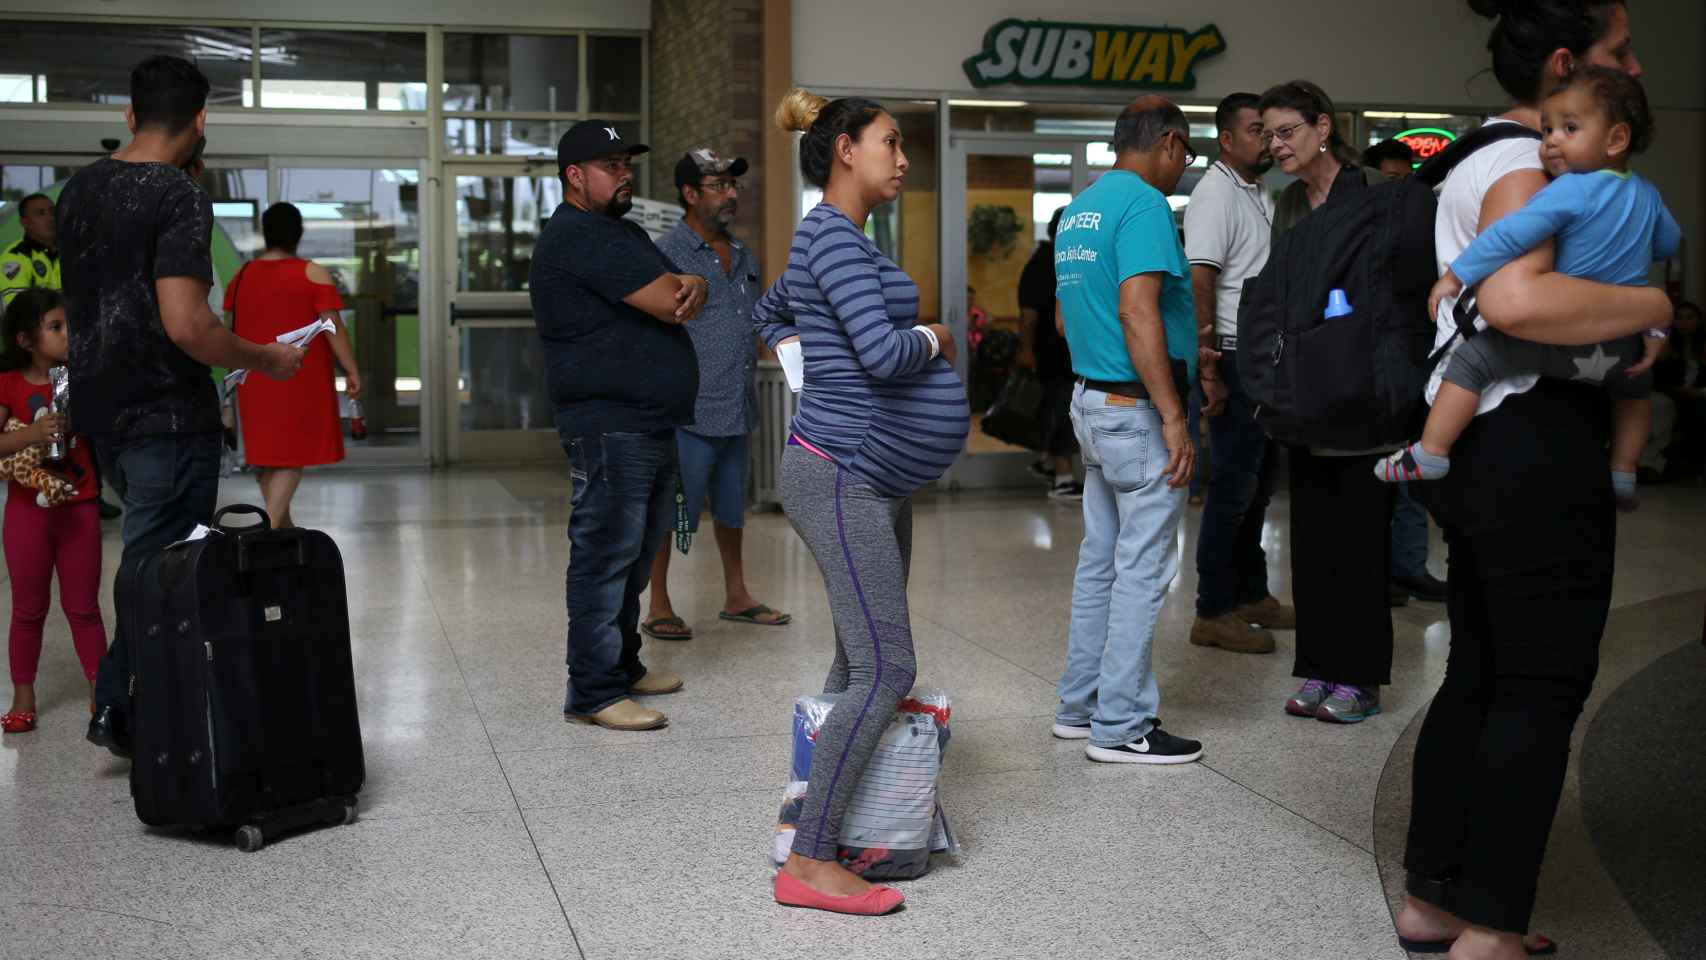 Una mujer embarazada, junto a otros inmigrantes, en la estación de autobuses de Texas.